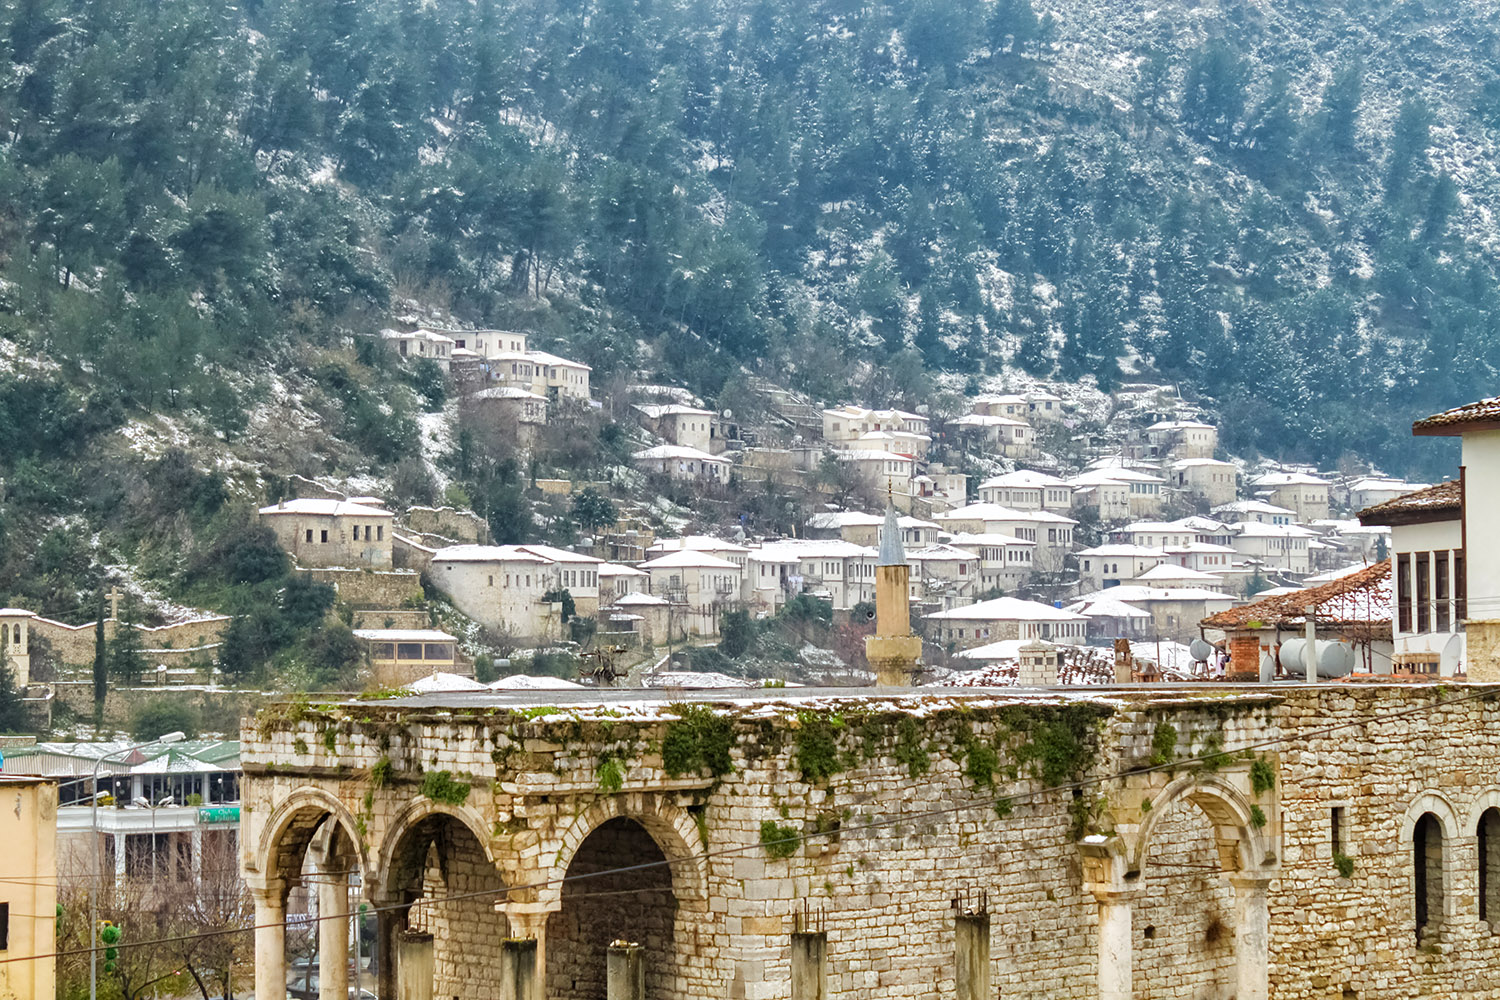 雪が残る千の窓、世界遺産ベラトの風景